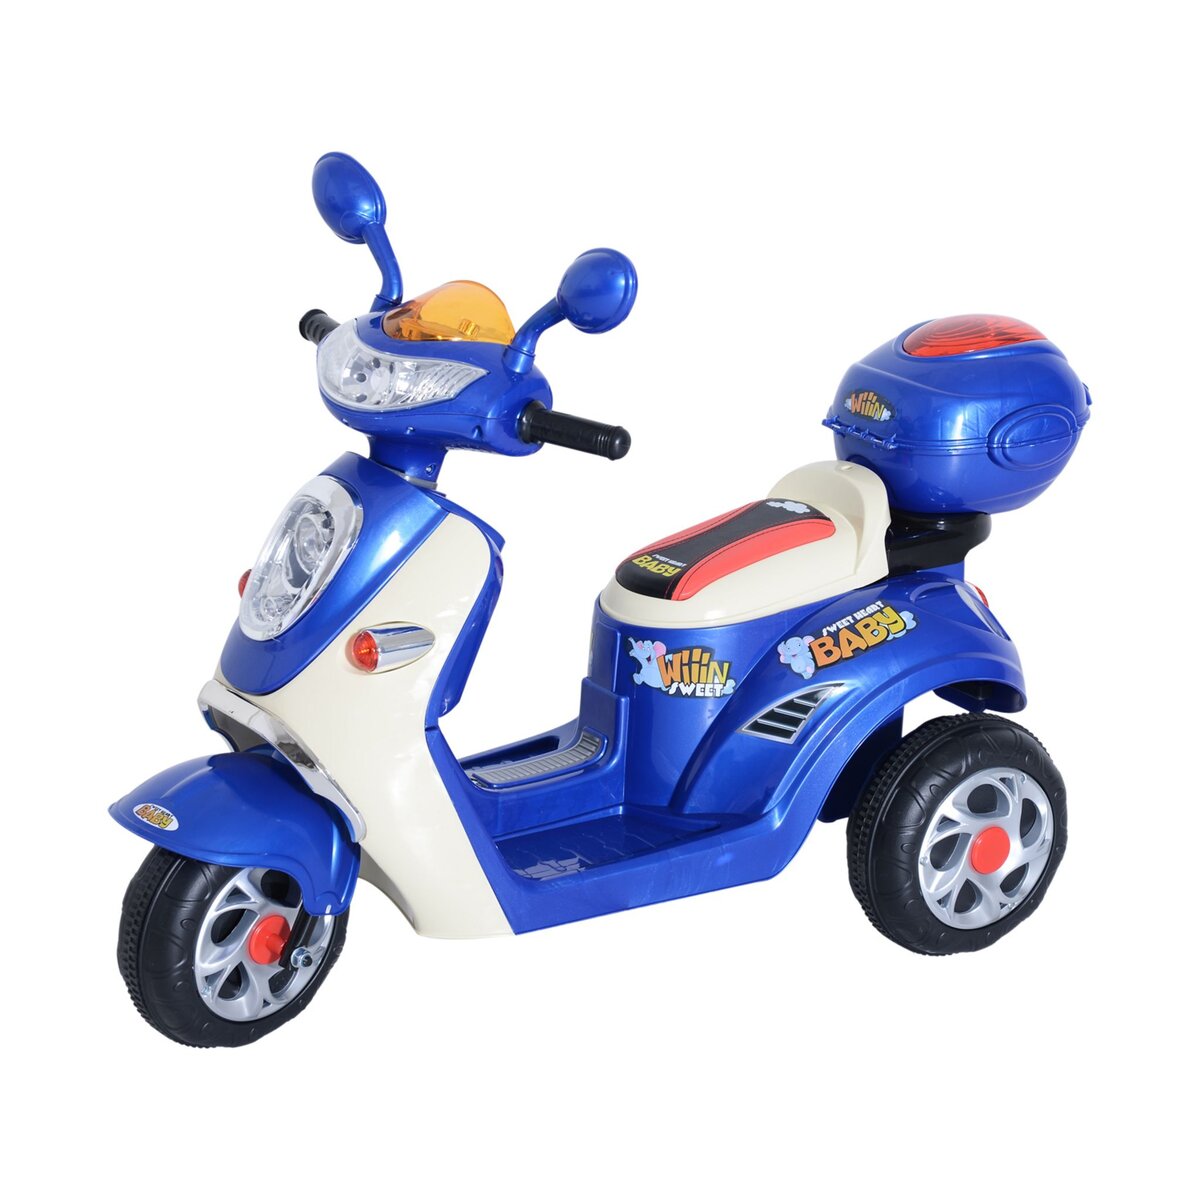 HOMCOM HOMCOM Moto scooter électrique pour enfants 6 V env. 3 Km/h 3 roues  et topcase effet lumineux et sonore rose pas cher 